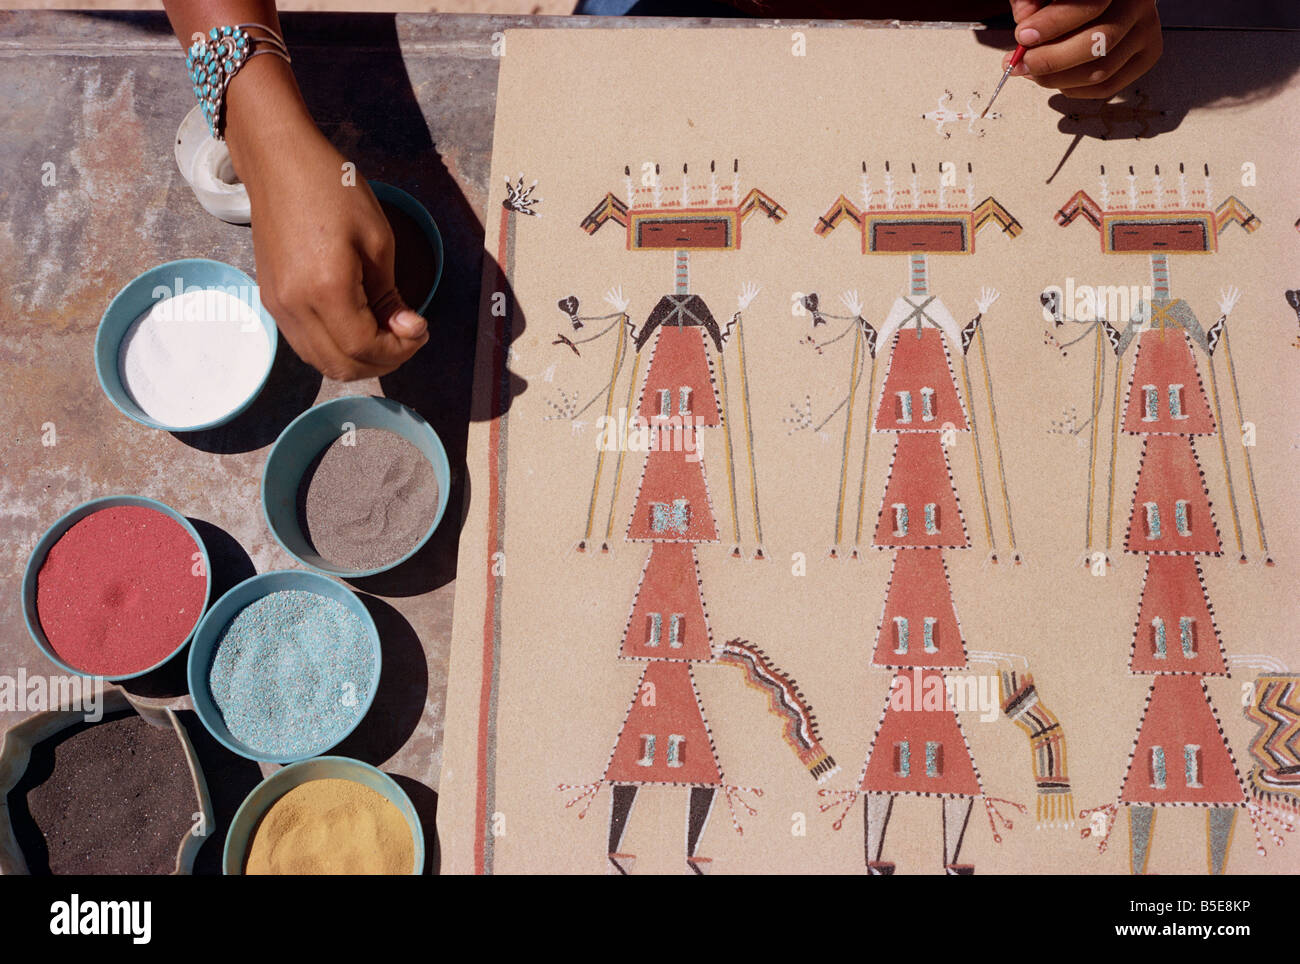 Détail d'une peinture de sable, New Mexico, USA, Amérique du Nord Banque D'Images